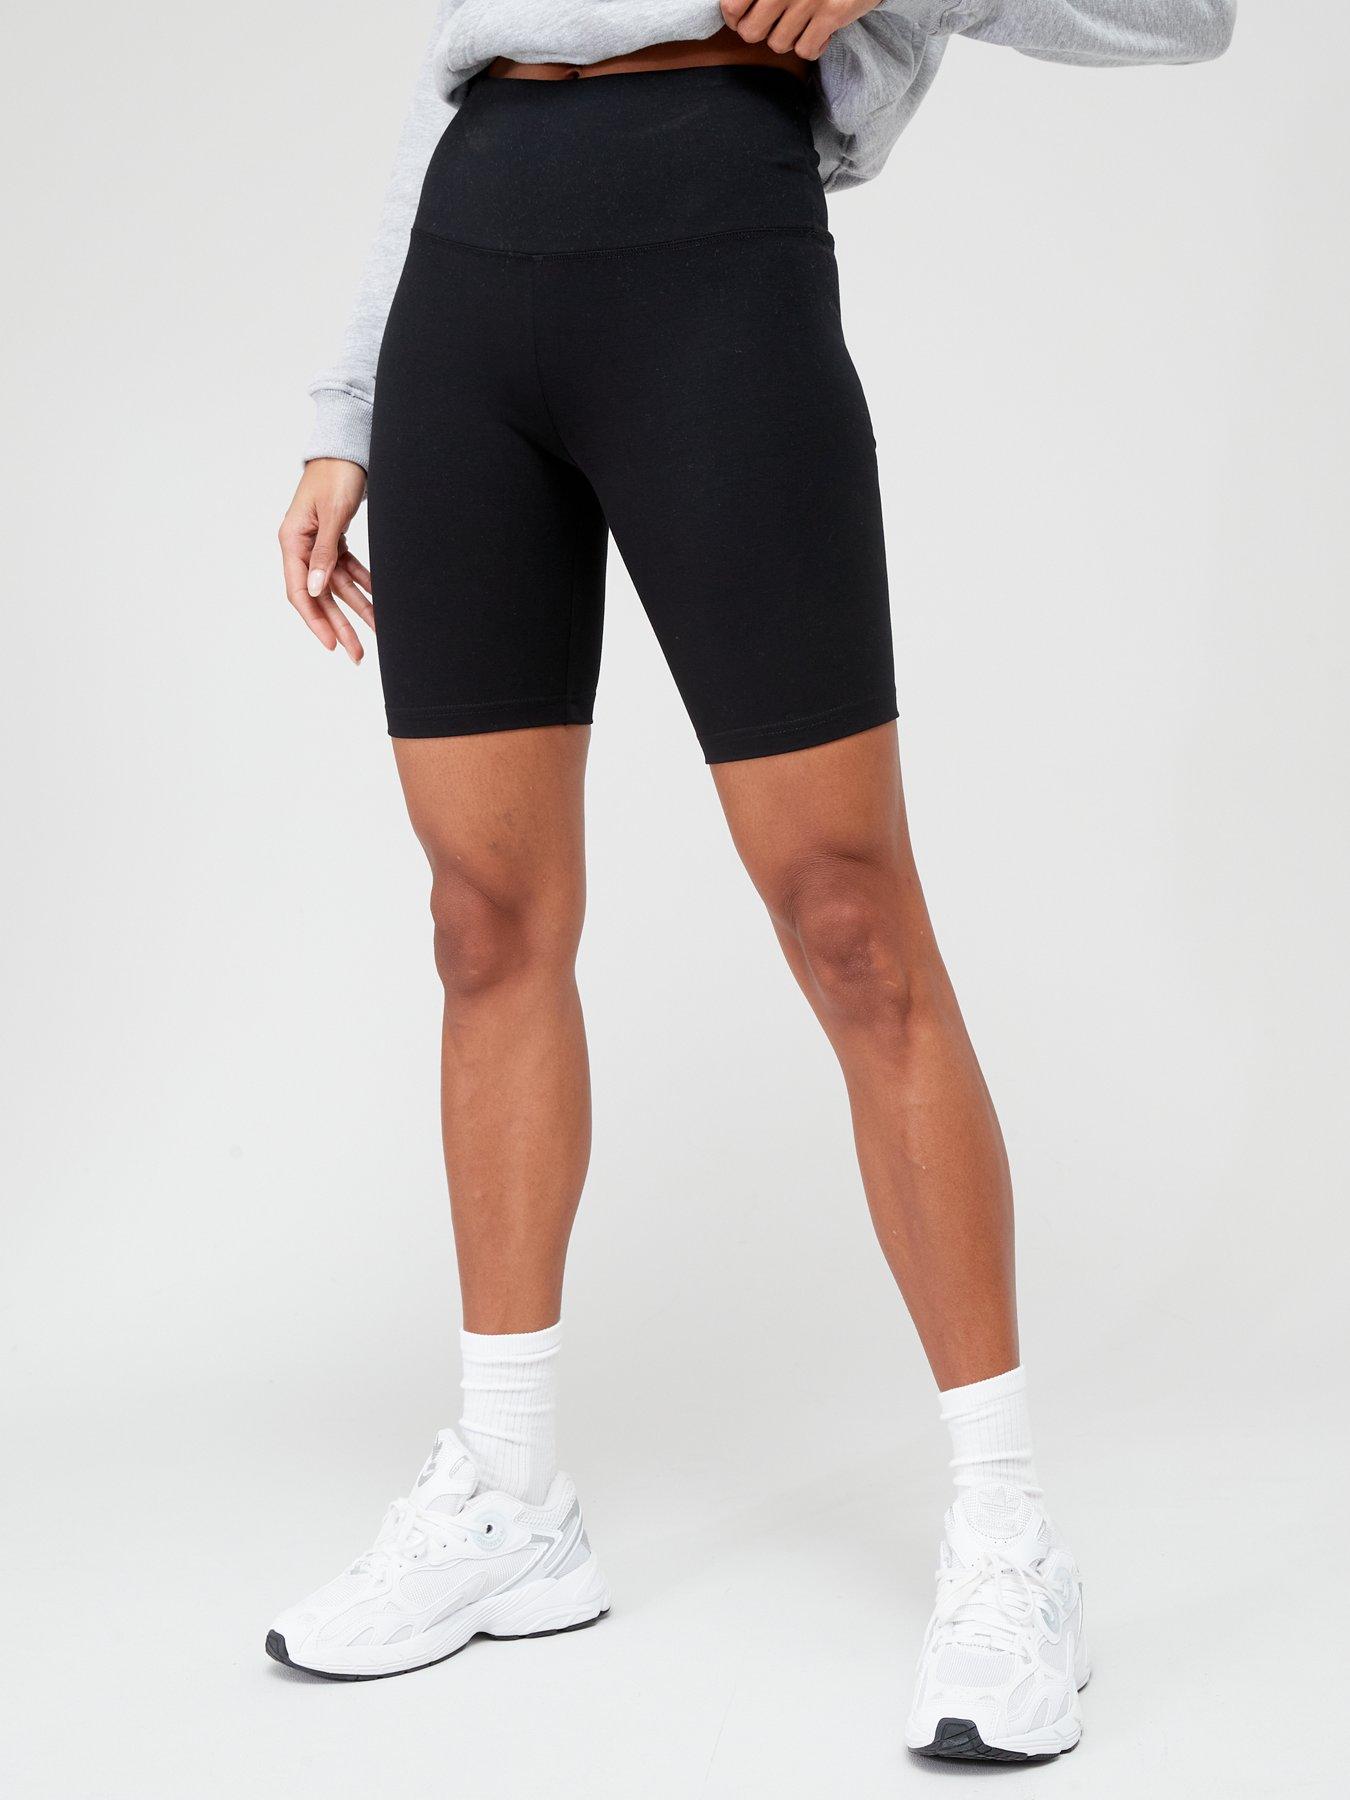 High Waist Organic Cotton Cycling Shorts - Black